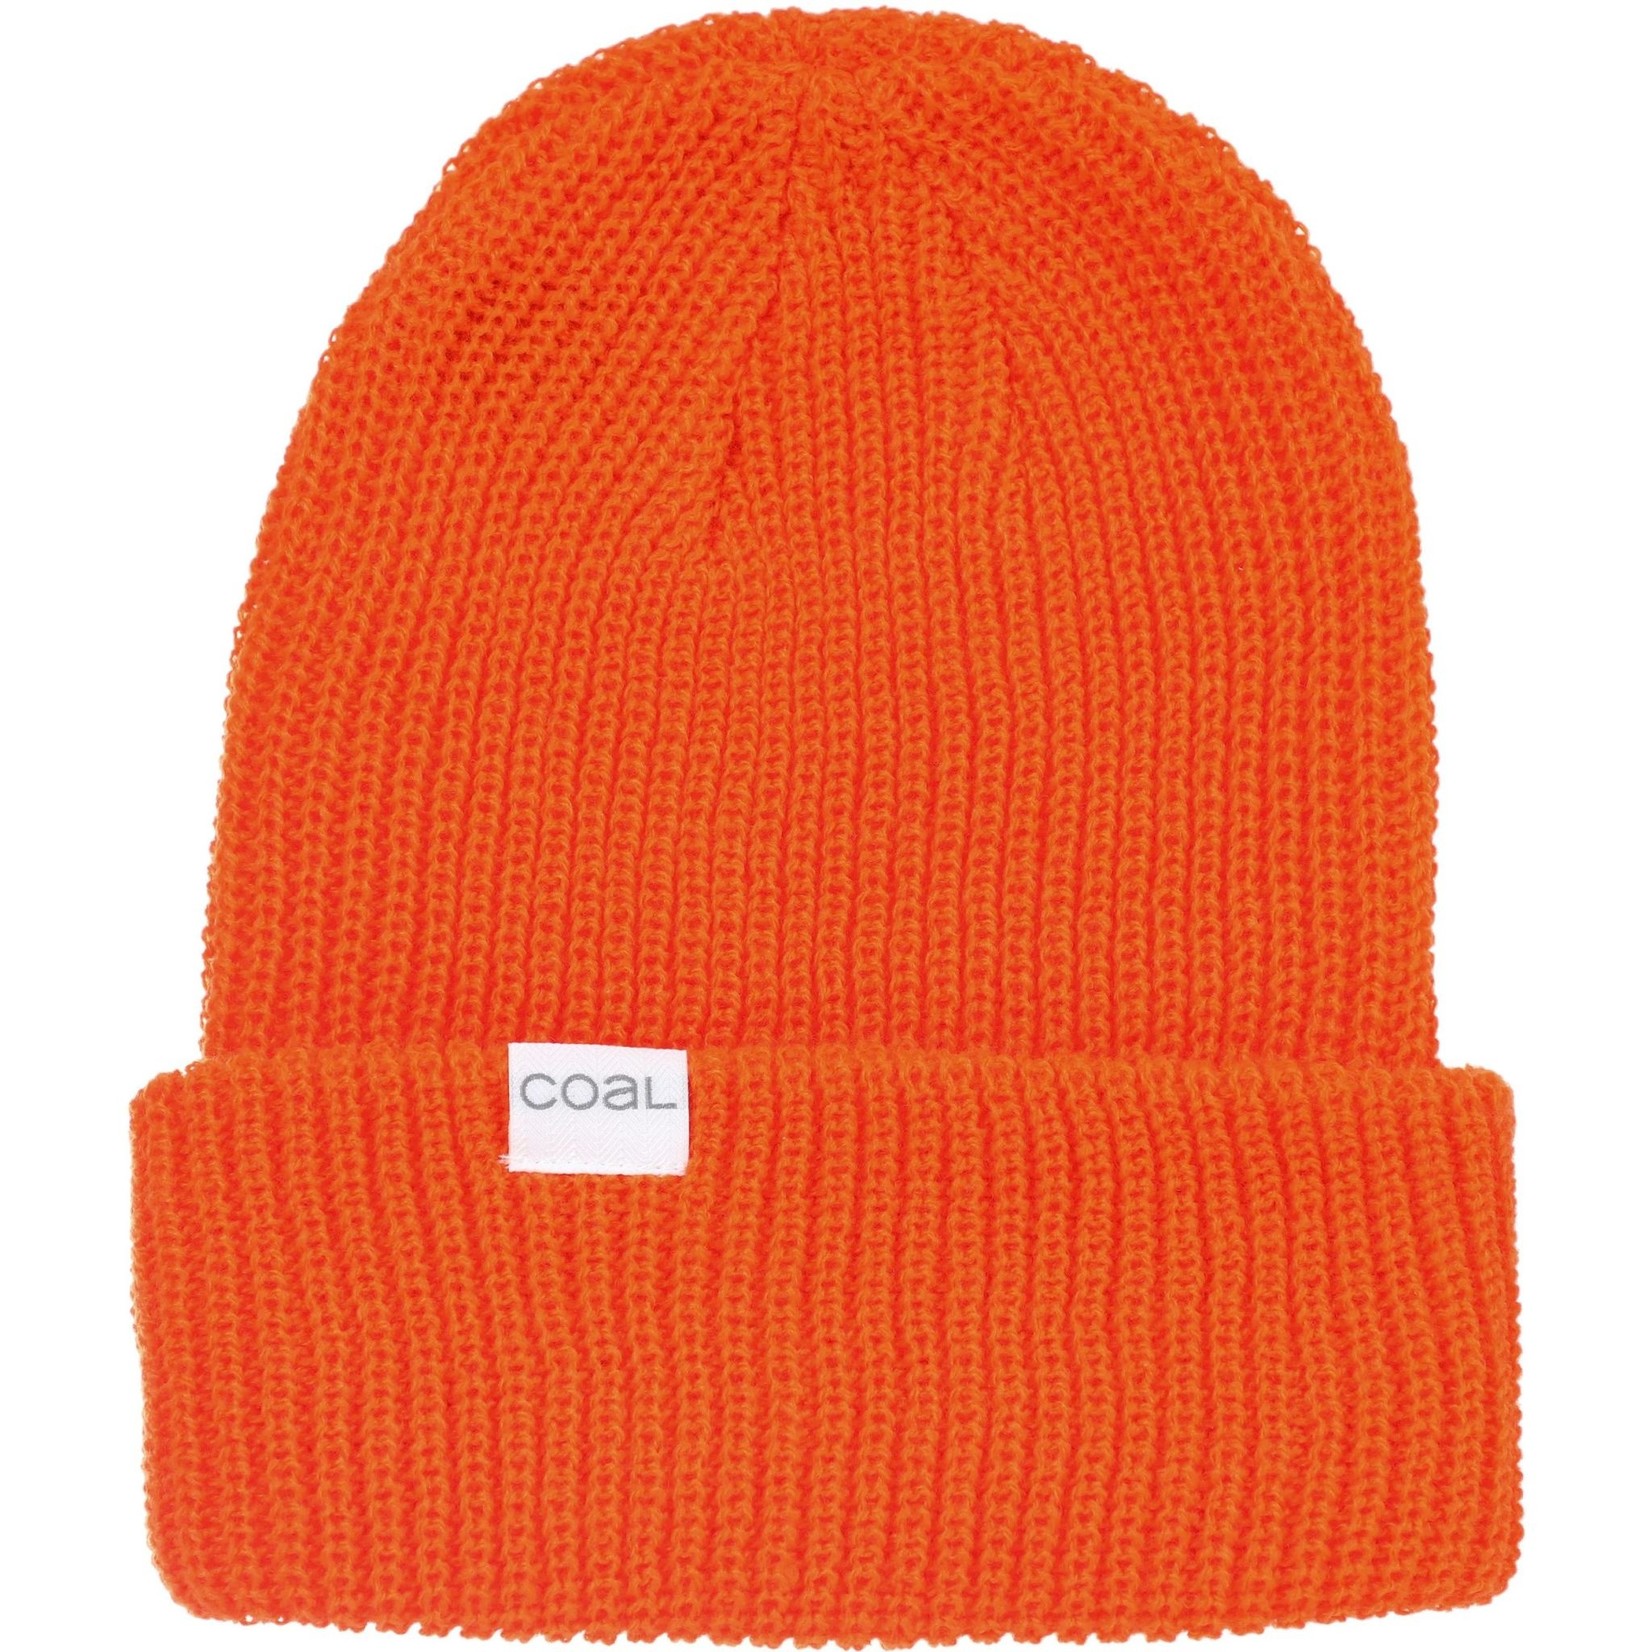 Coal Headwear Coal Stanley Beanie - Orange